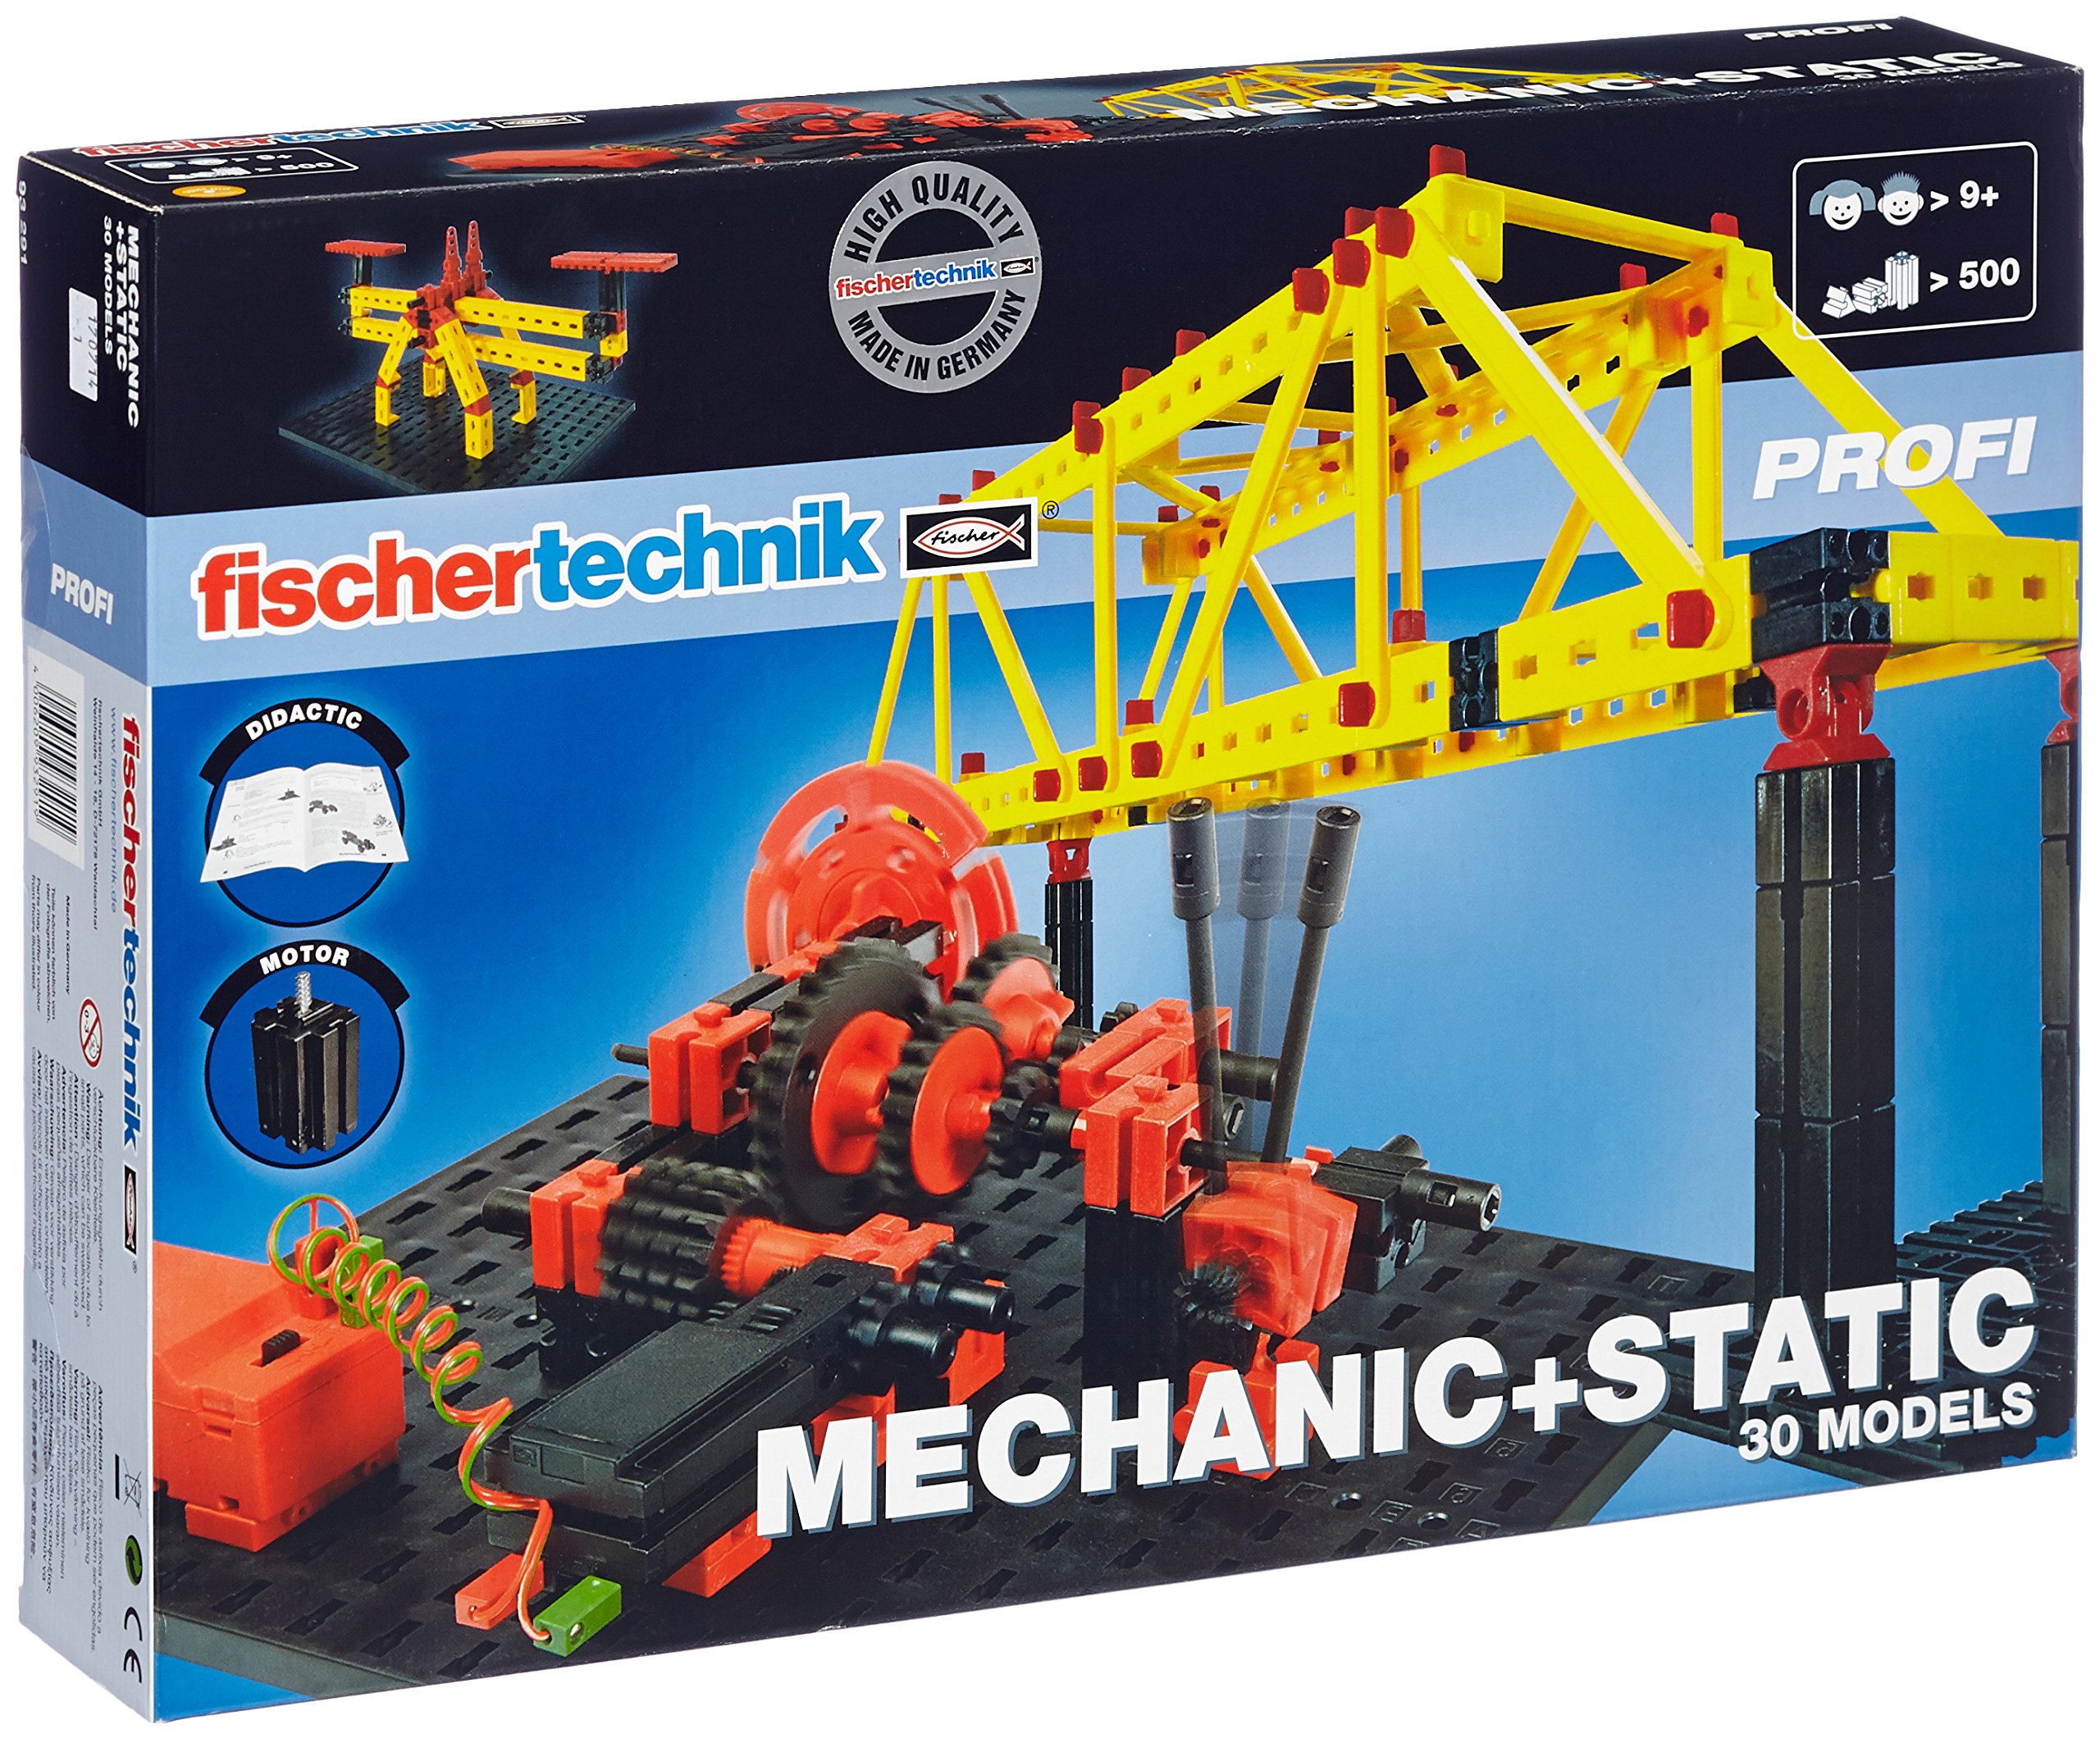 Fischertechnik Mechanic And Static